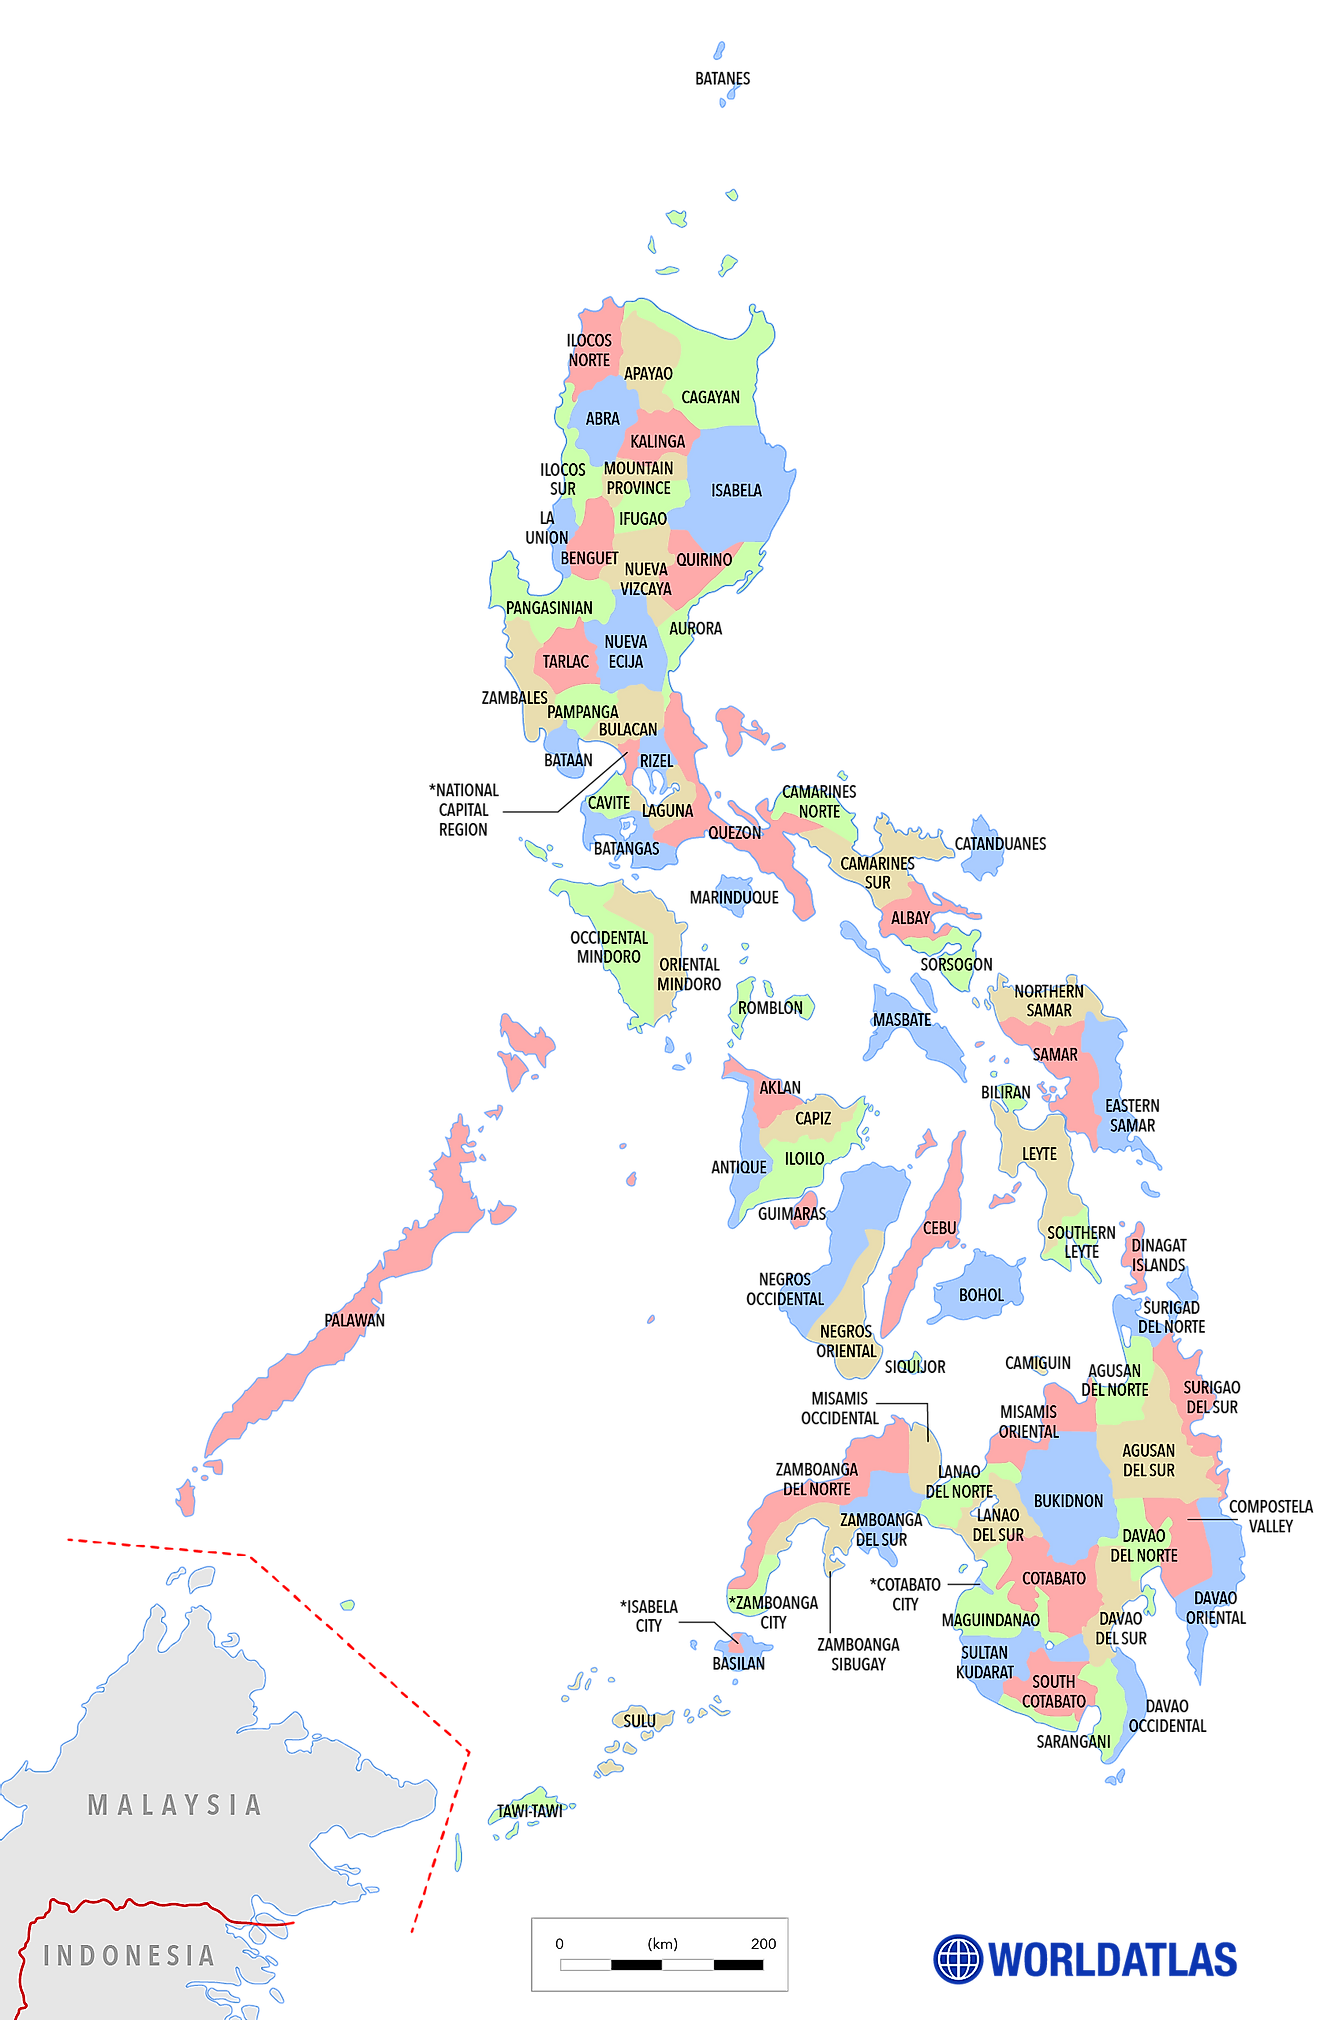 Mapa político de Filipinas que muestra sus principales divisiones administrativas y la ciudad capital - Manila